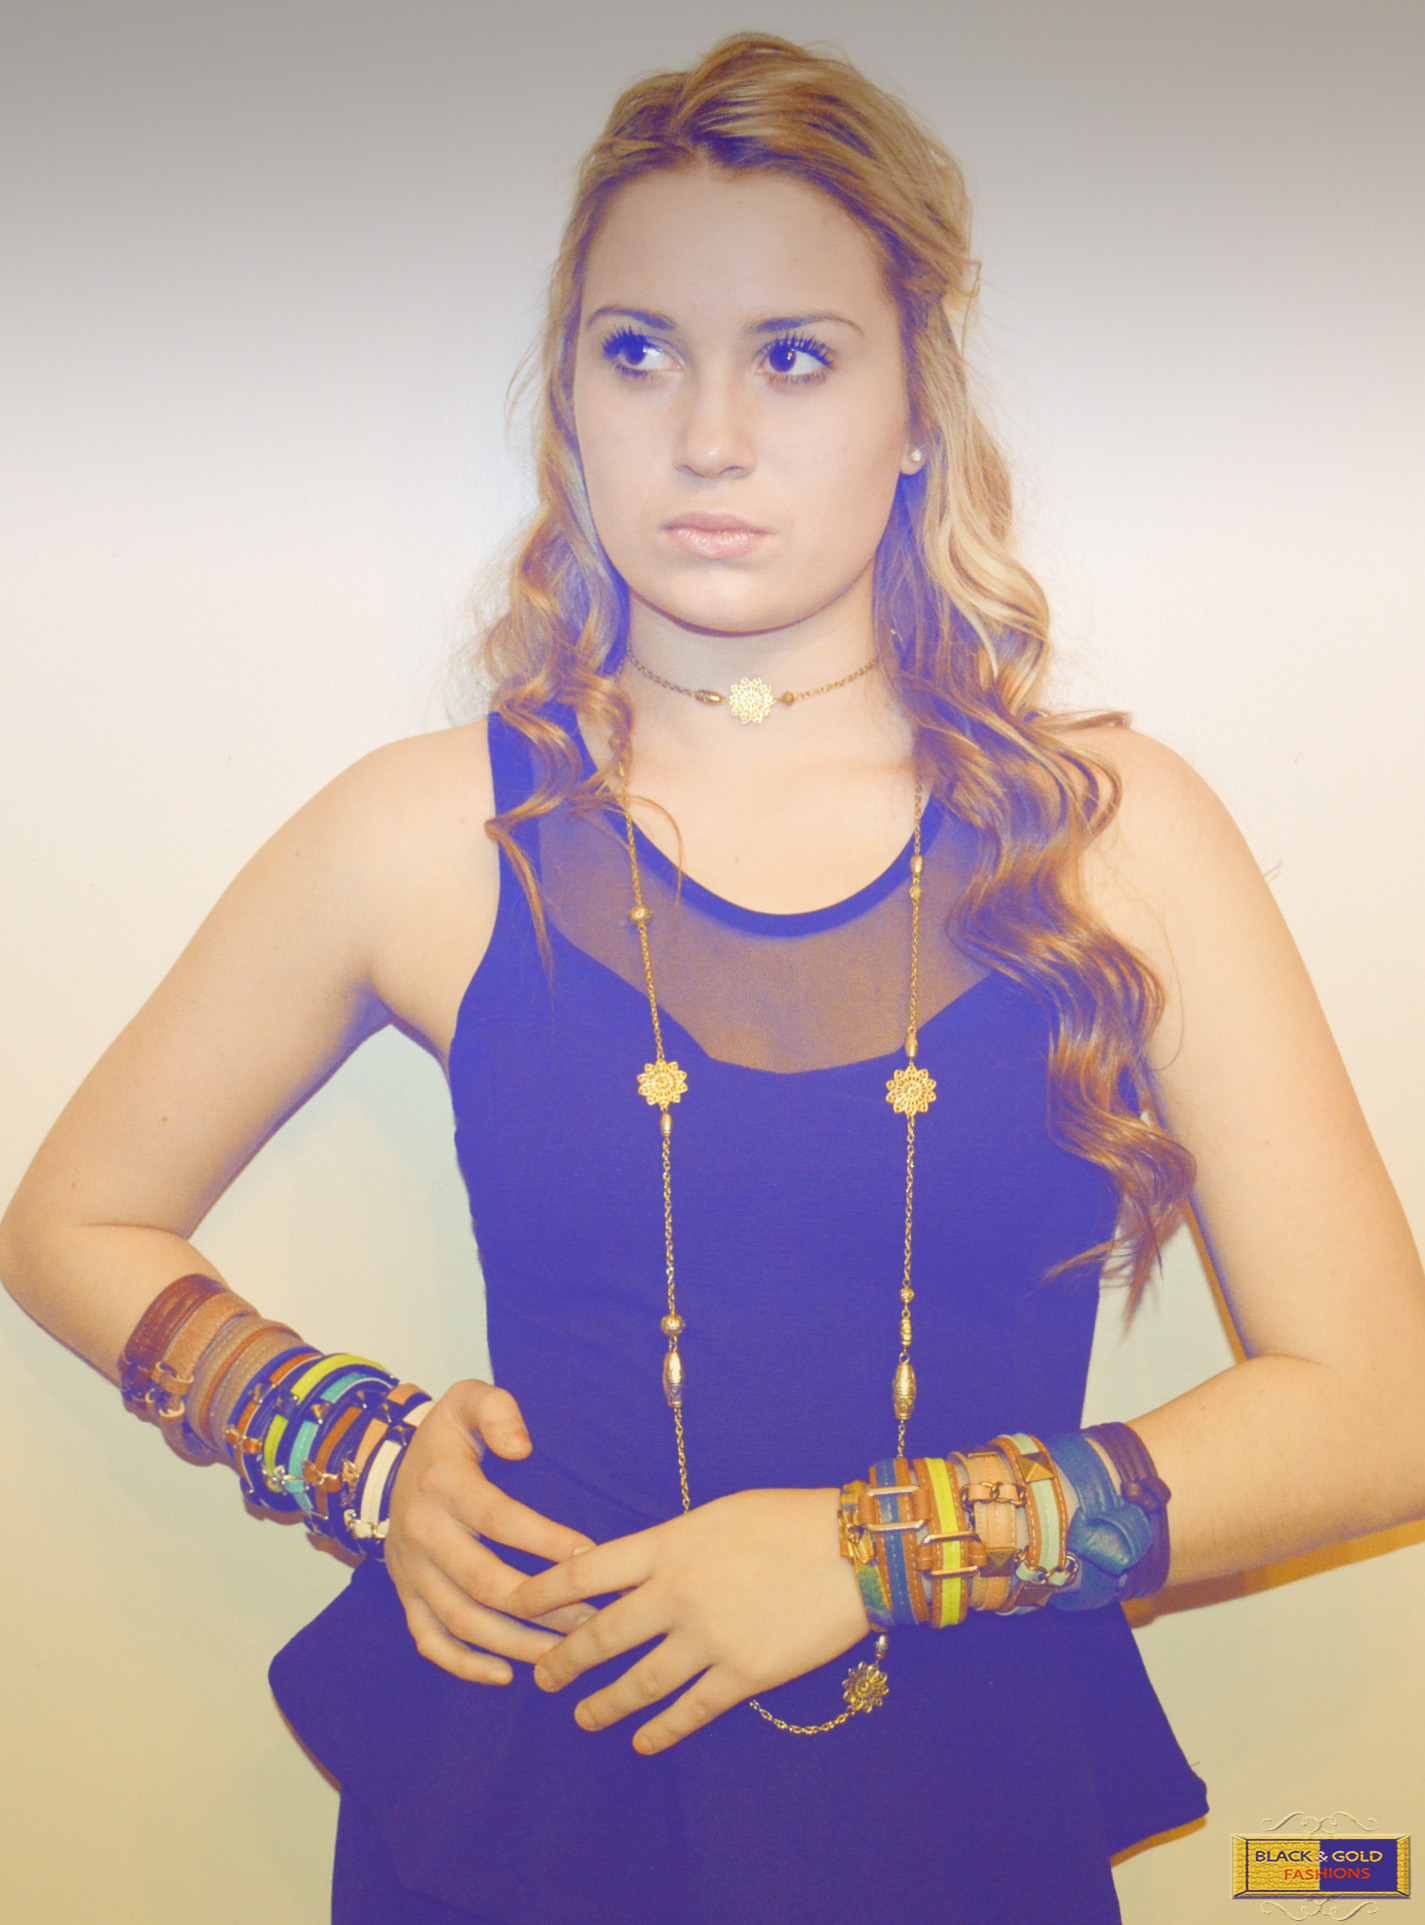 (Model) Black & Gold Fashions -Rachel Fashion Photoshoot (1).jpg